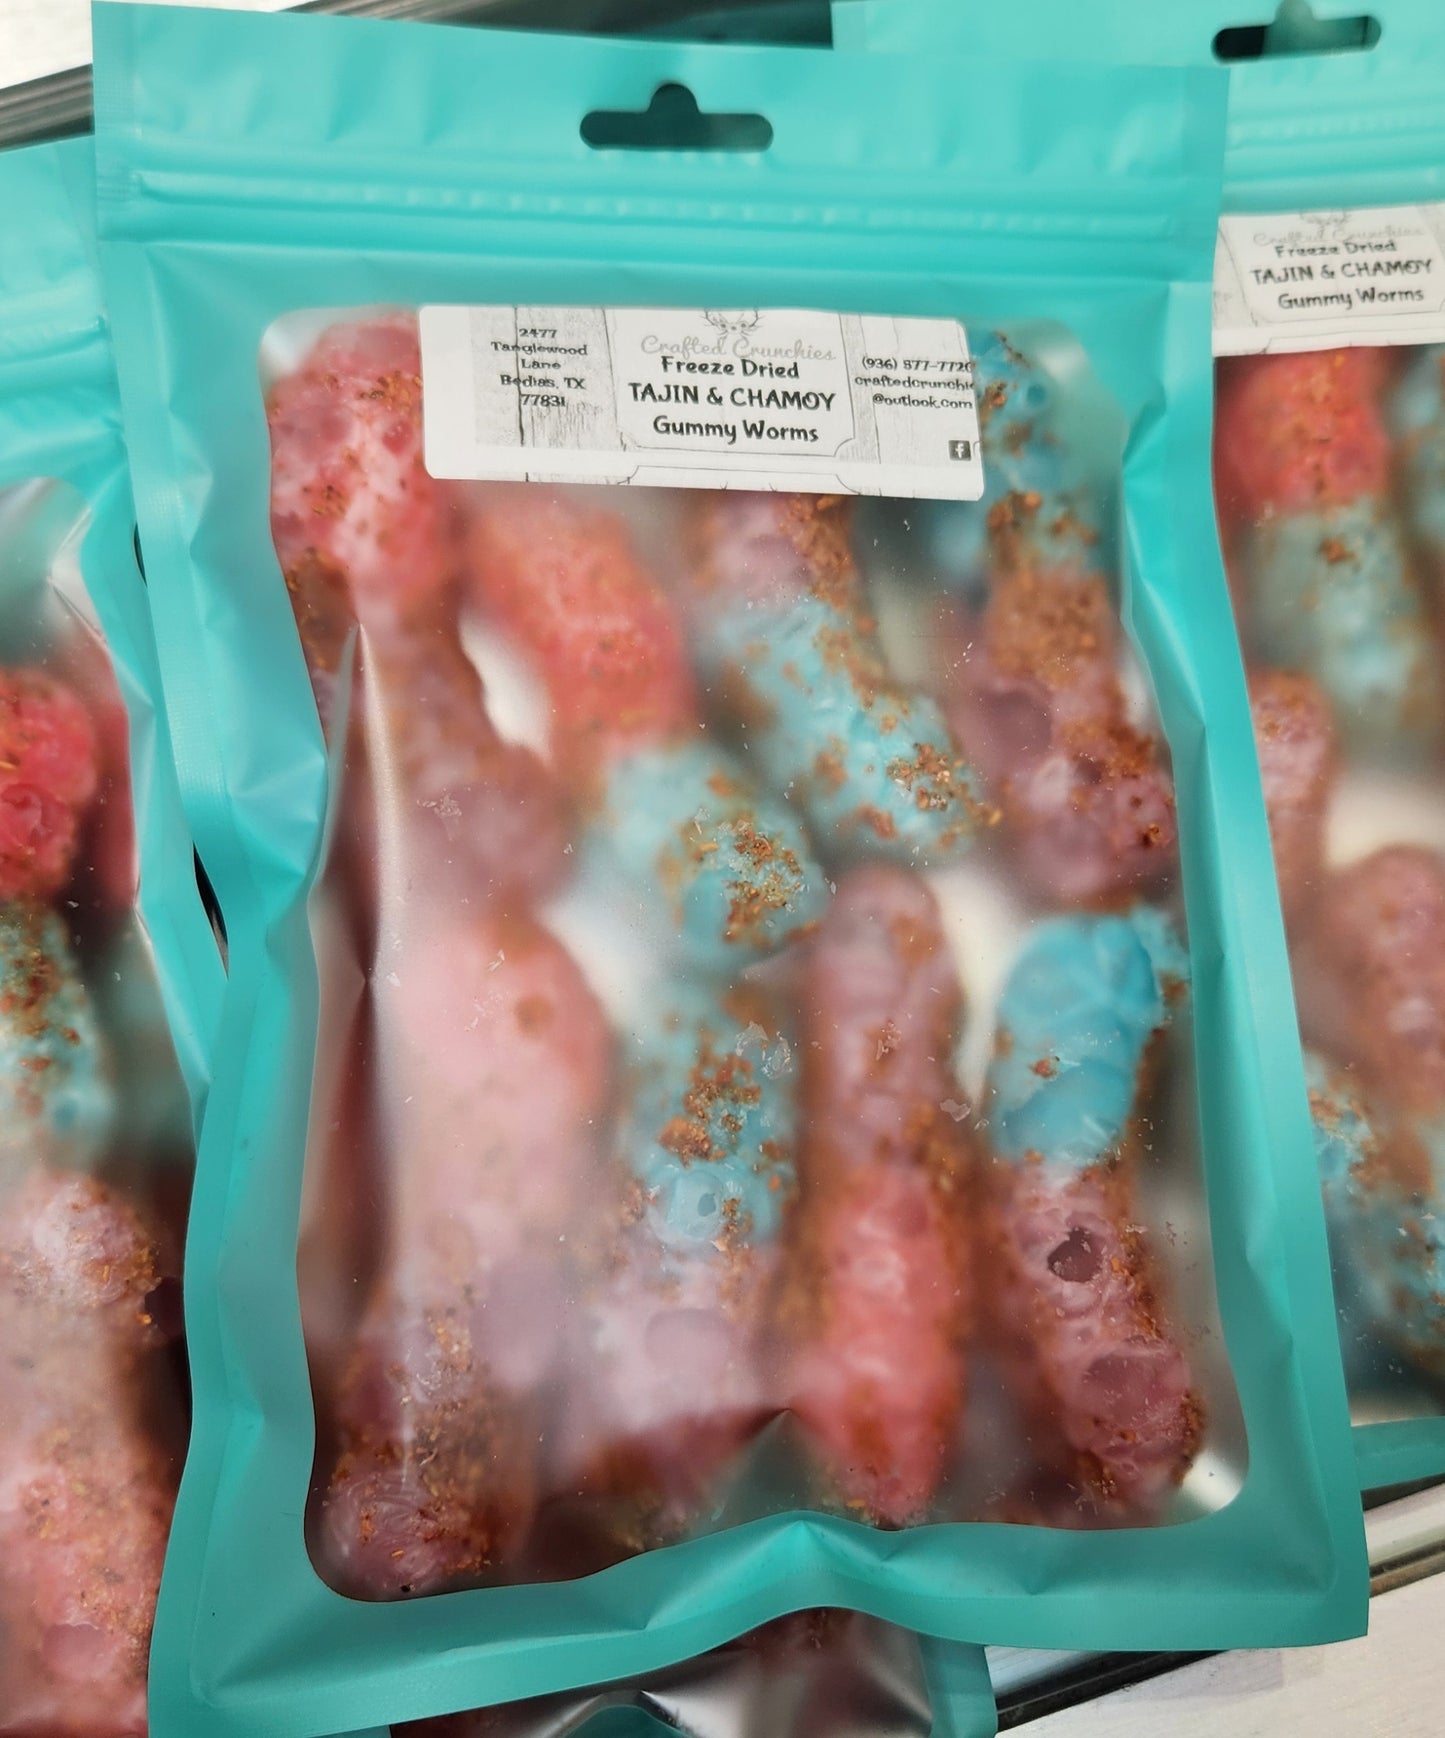 Freeze Dried TAJIN & CHAMOY Gummy Worms- 5x7 STANDARD Size